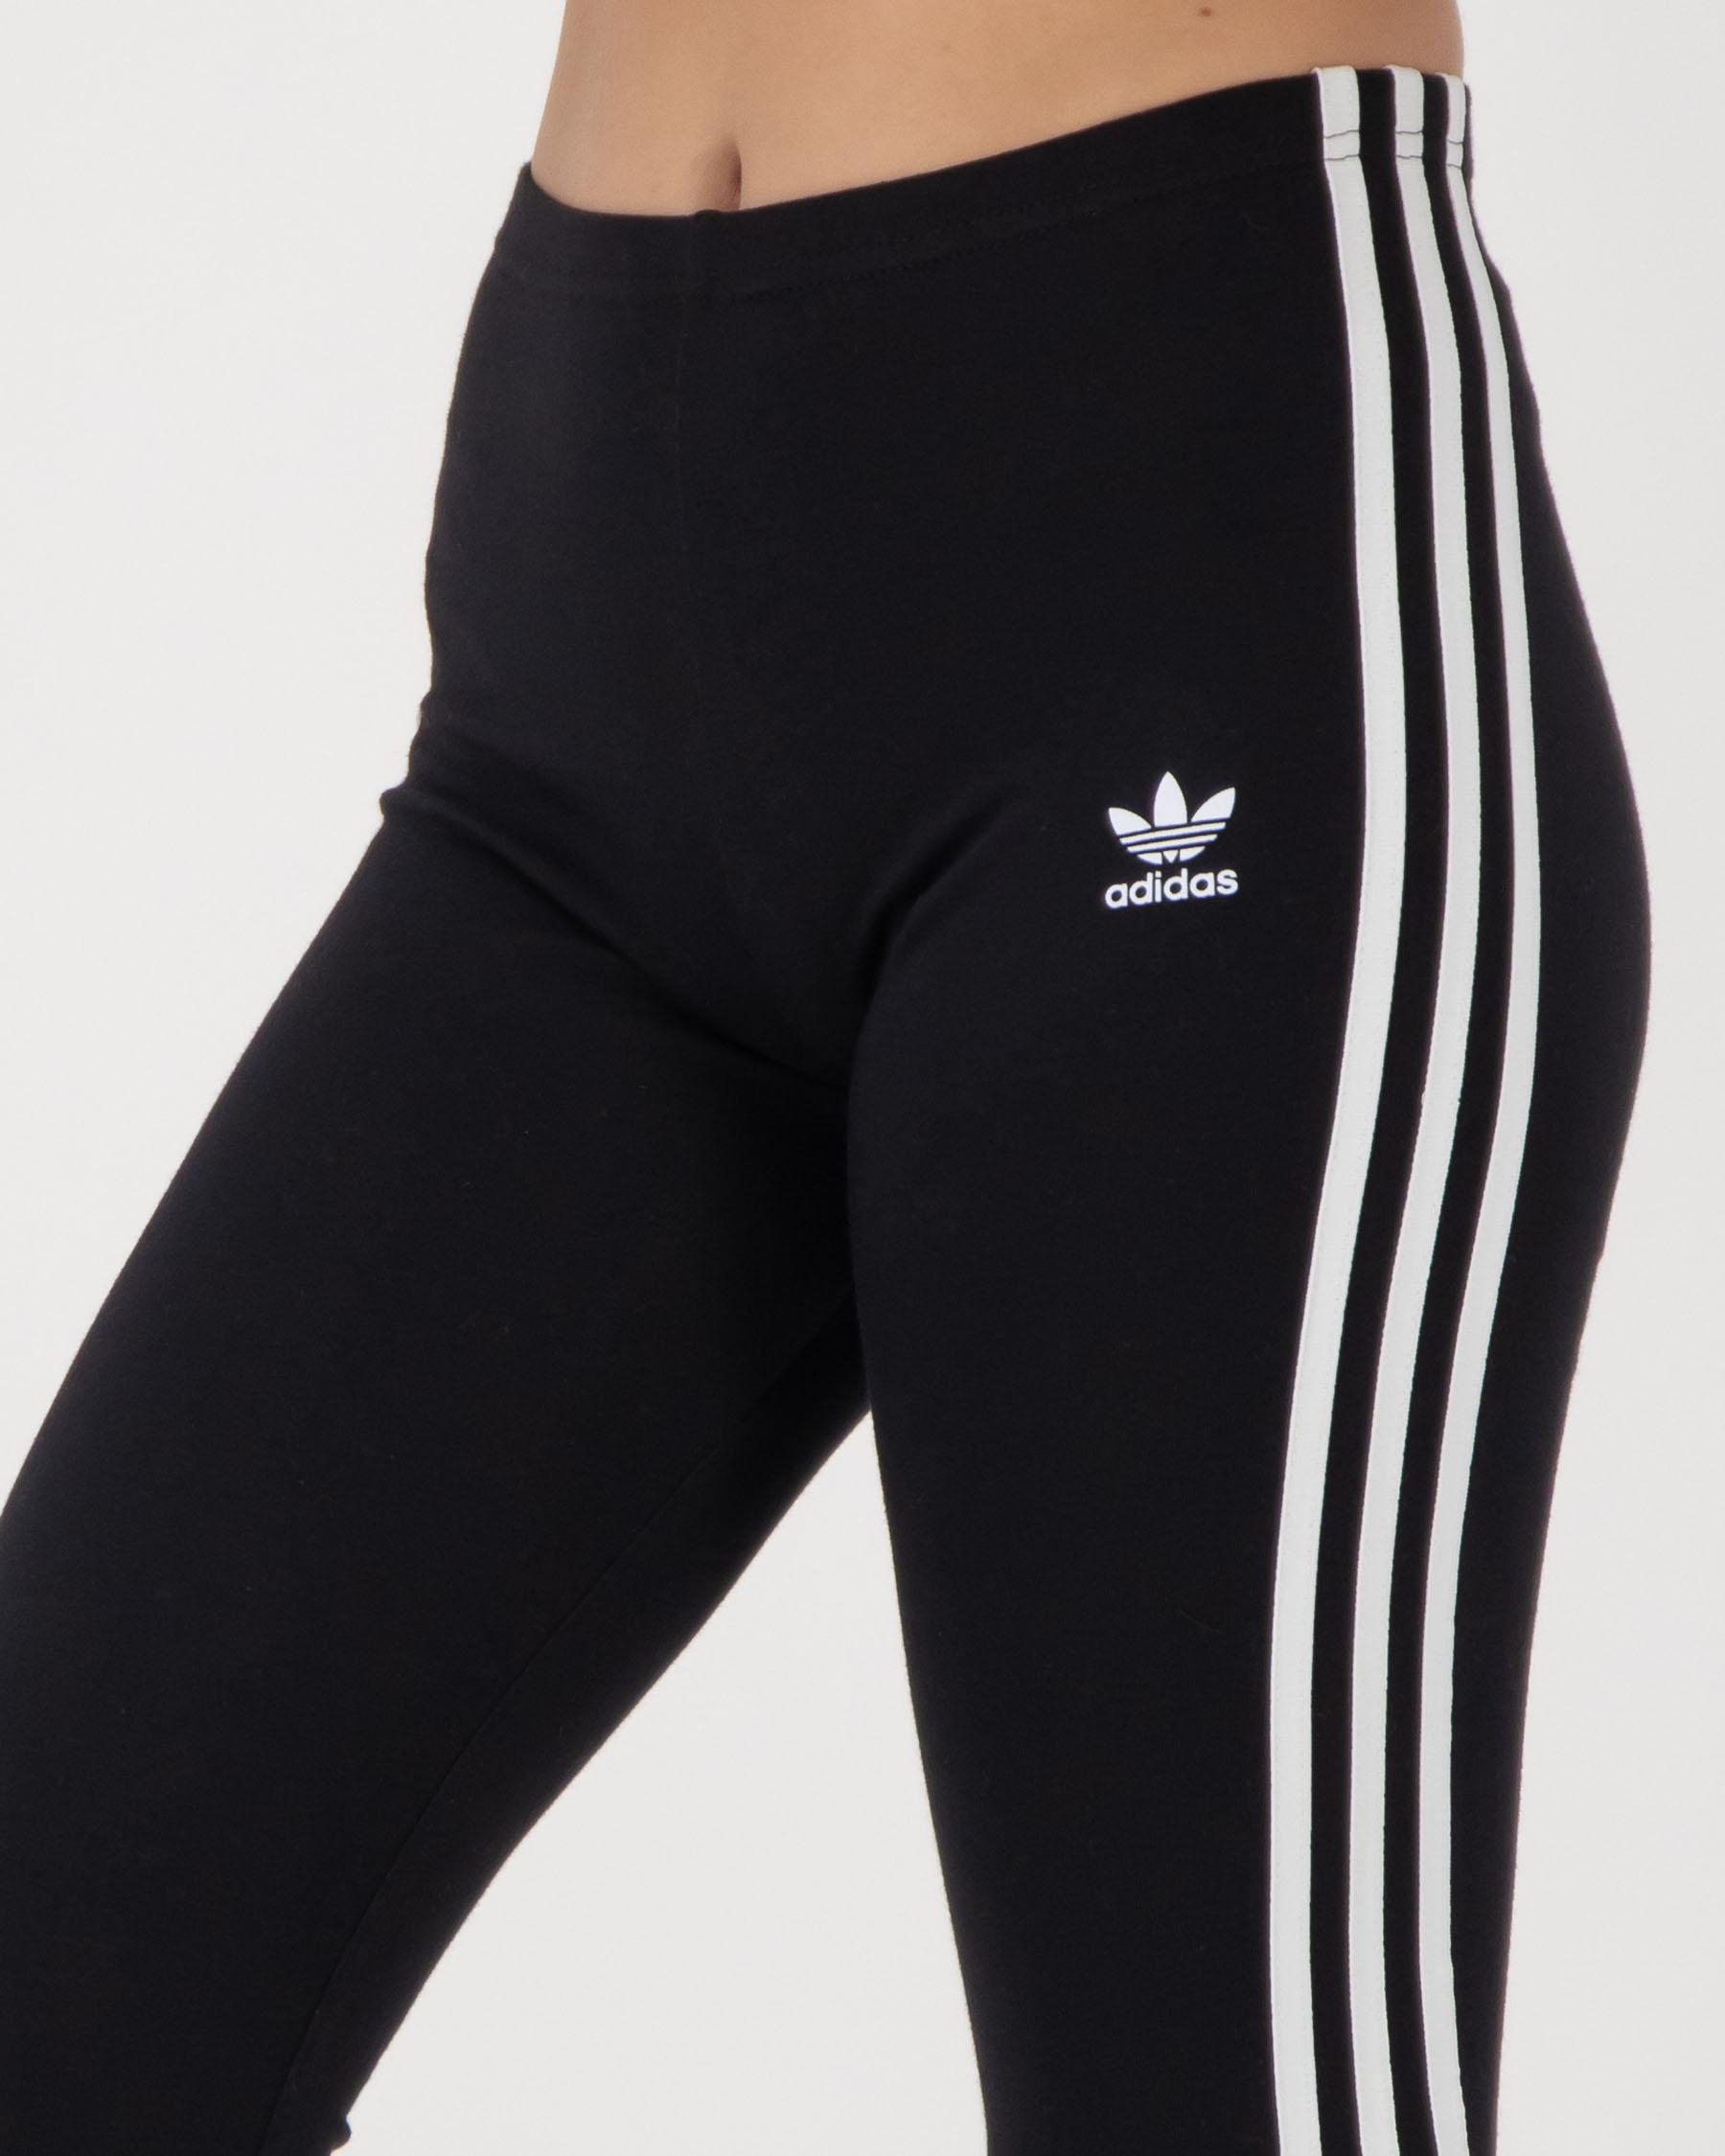 Adidas Girls' 3 Stripe Leggings In Black/white - Fast Shipping & Easy ...